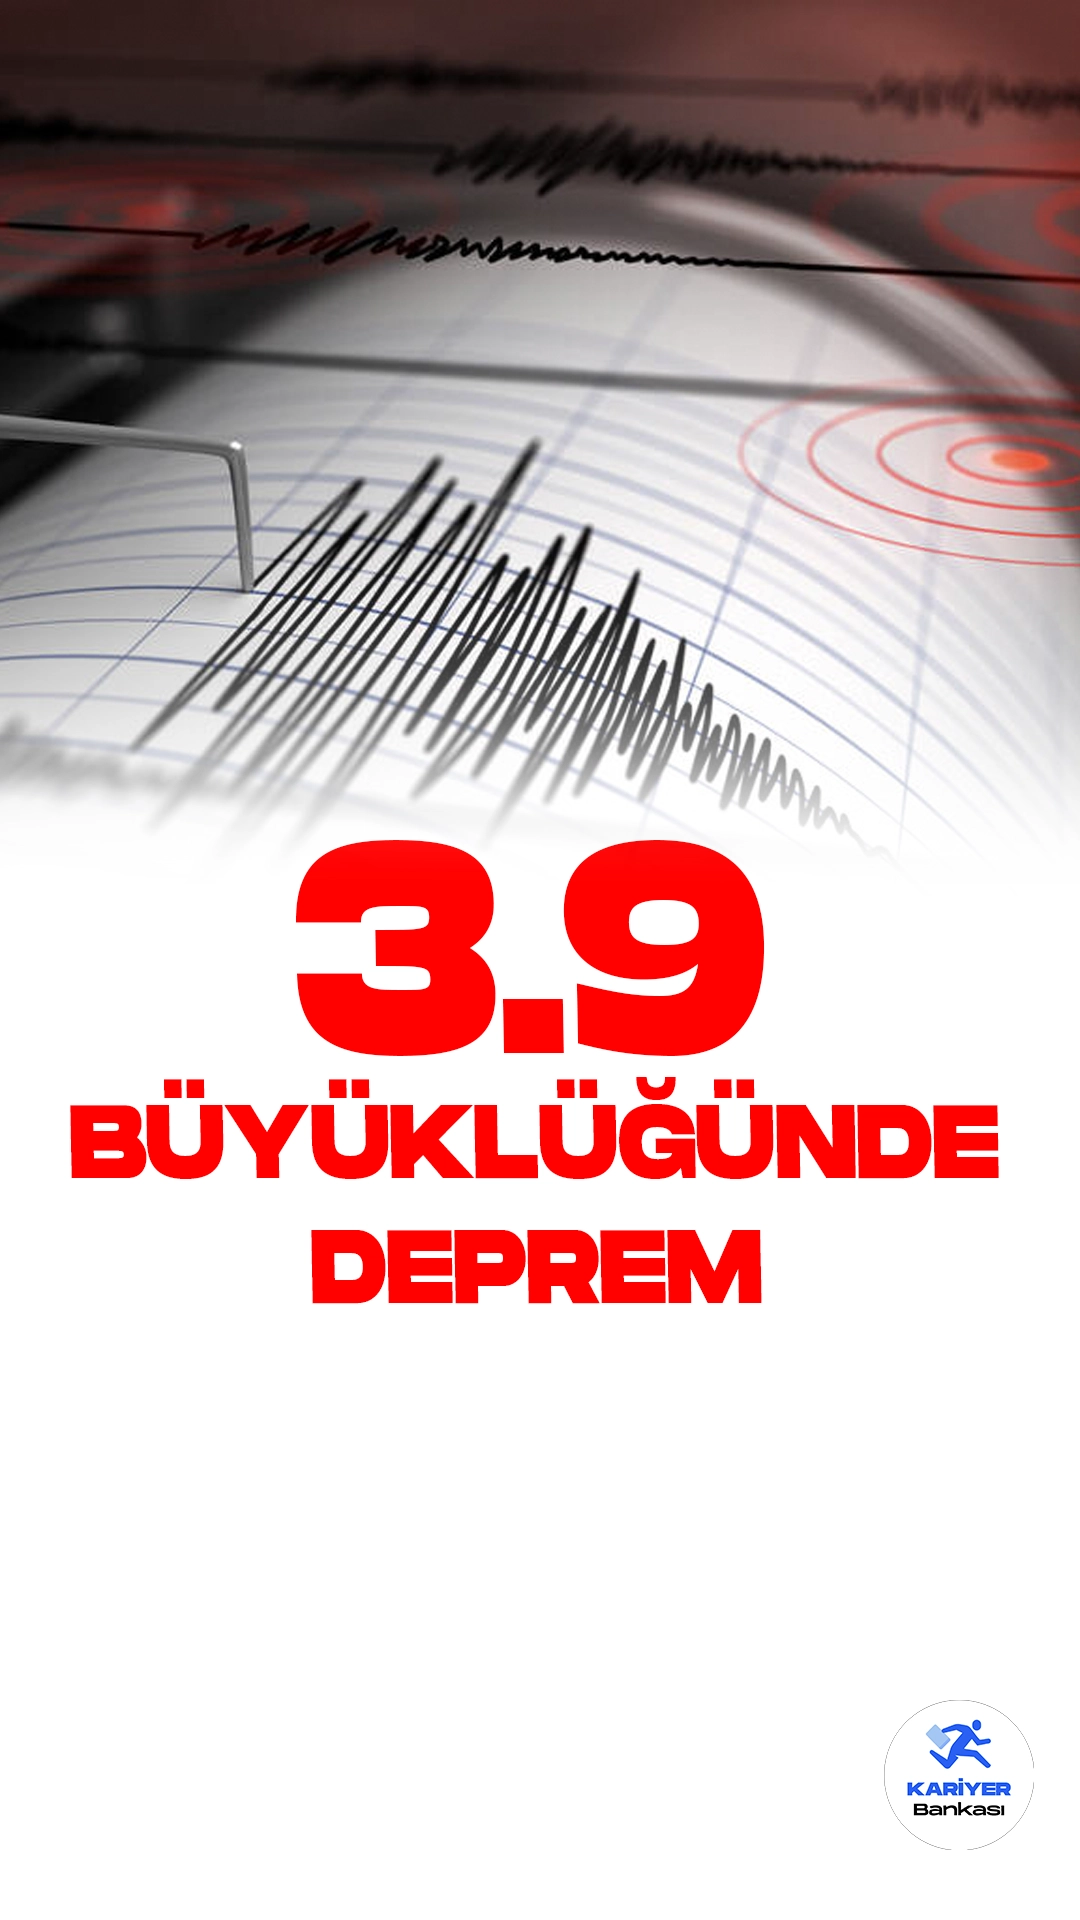 Siirt'te 3.9 Büyüklüğünde Deprem Oldu. İçişleri Bakanlığı Afet ve Acil Durum Yönetimi Başkanlığı (AFAD) resmi sayfasından yayımlanan son dakika bilgisine göre, Siirt merkezde 3.9 büyüklüğünde deprem meydana geldiği aktarıldı.